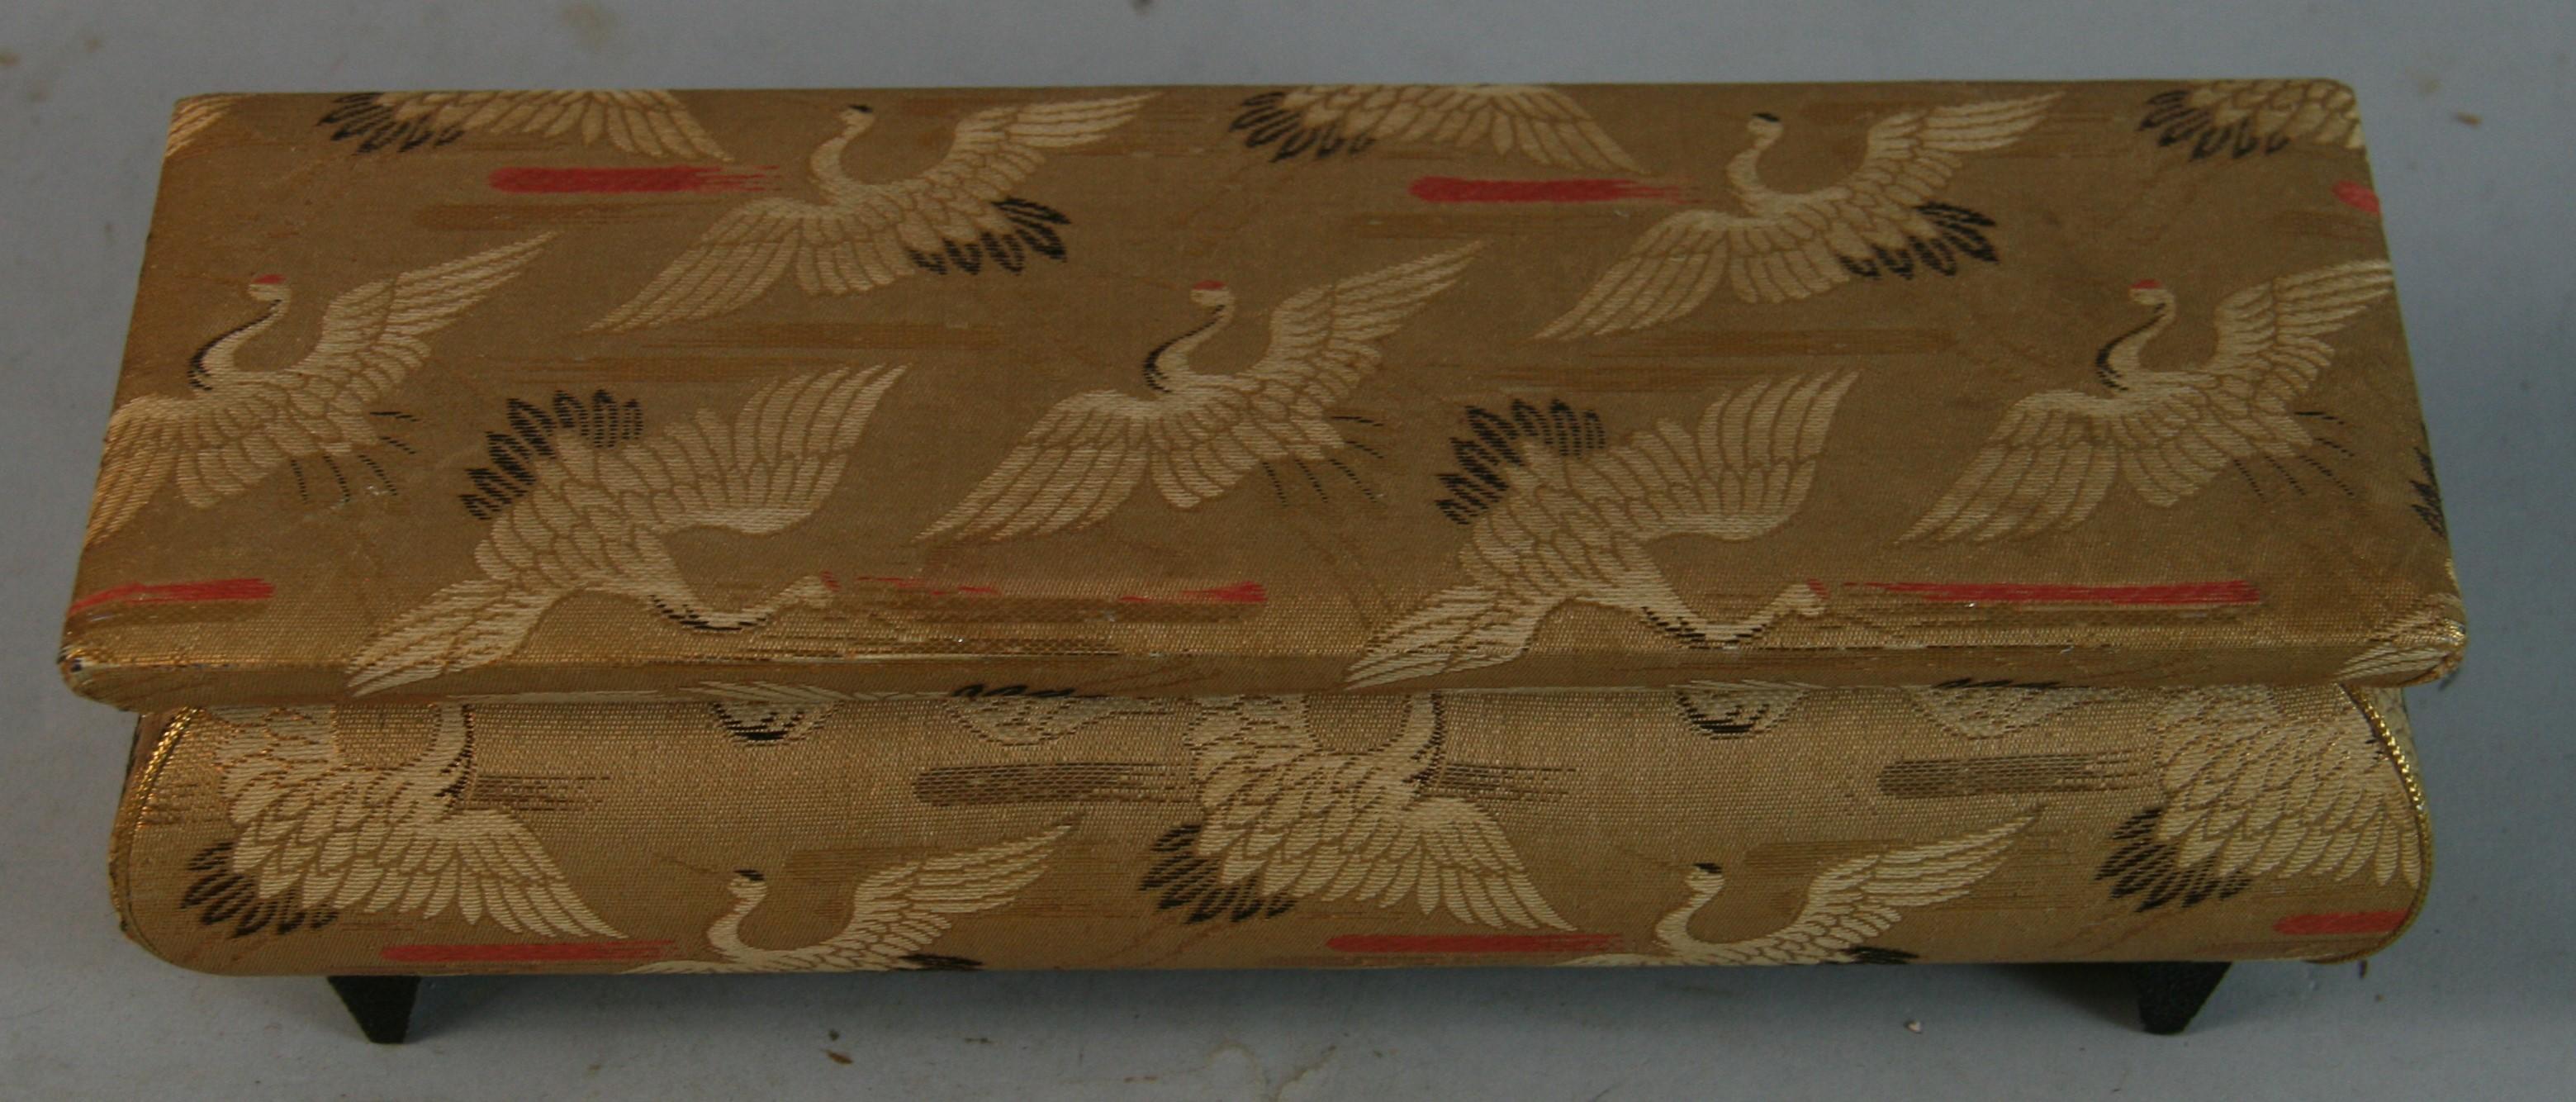 1574 Joyero/musicero vintage japonés de madera recubierto de tela
Fabricar en Japón
Mecanismo musical  en estado de funcionamiento